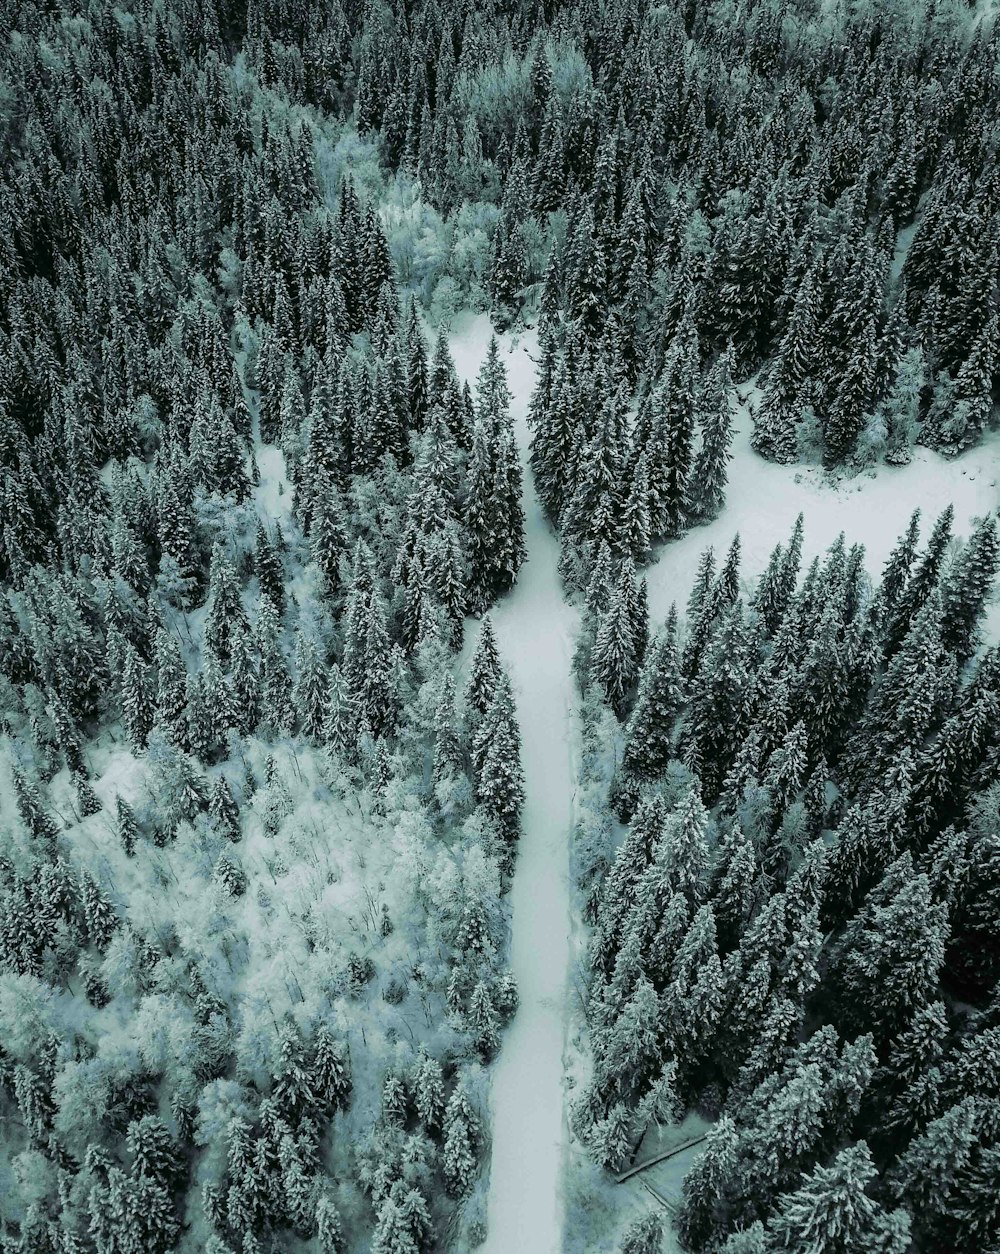 Luftaufnahme eines schneebedeckten Weges zwischen grünen Bäumen